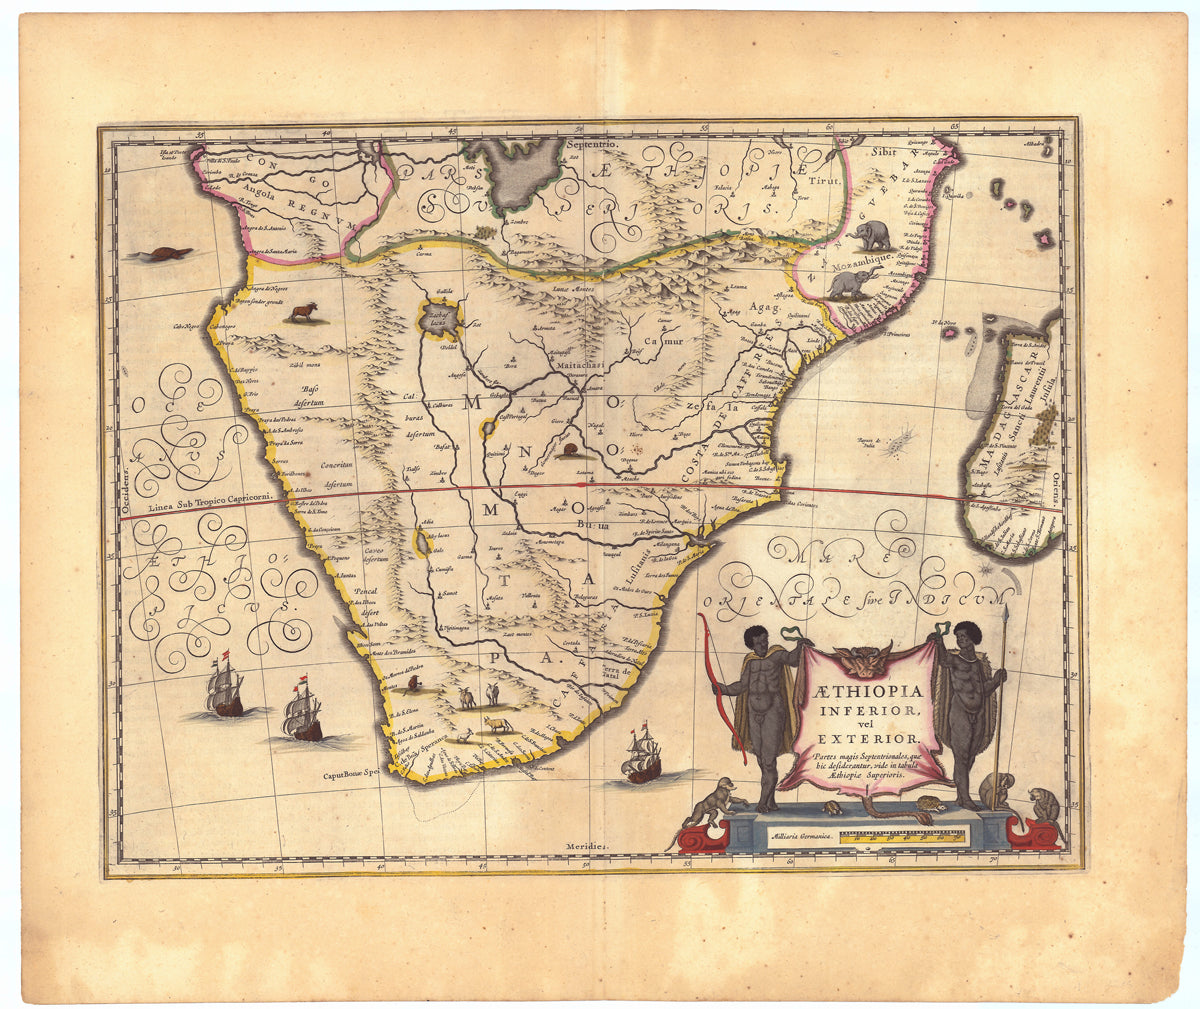 Südafrika im Jahr 1636 von Johannes Janssonius